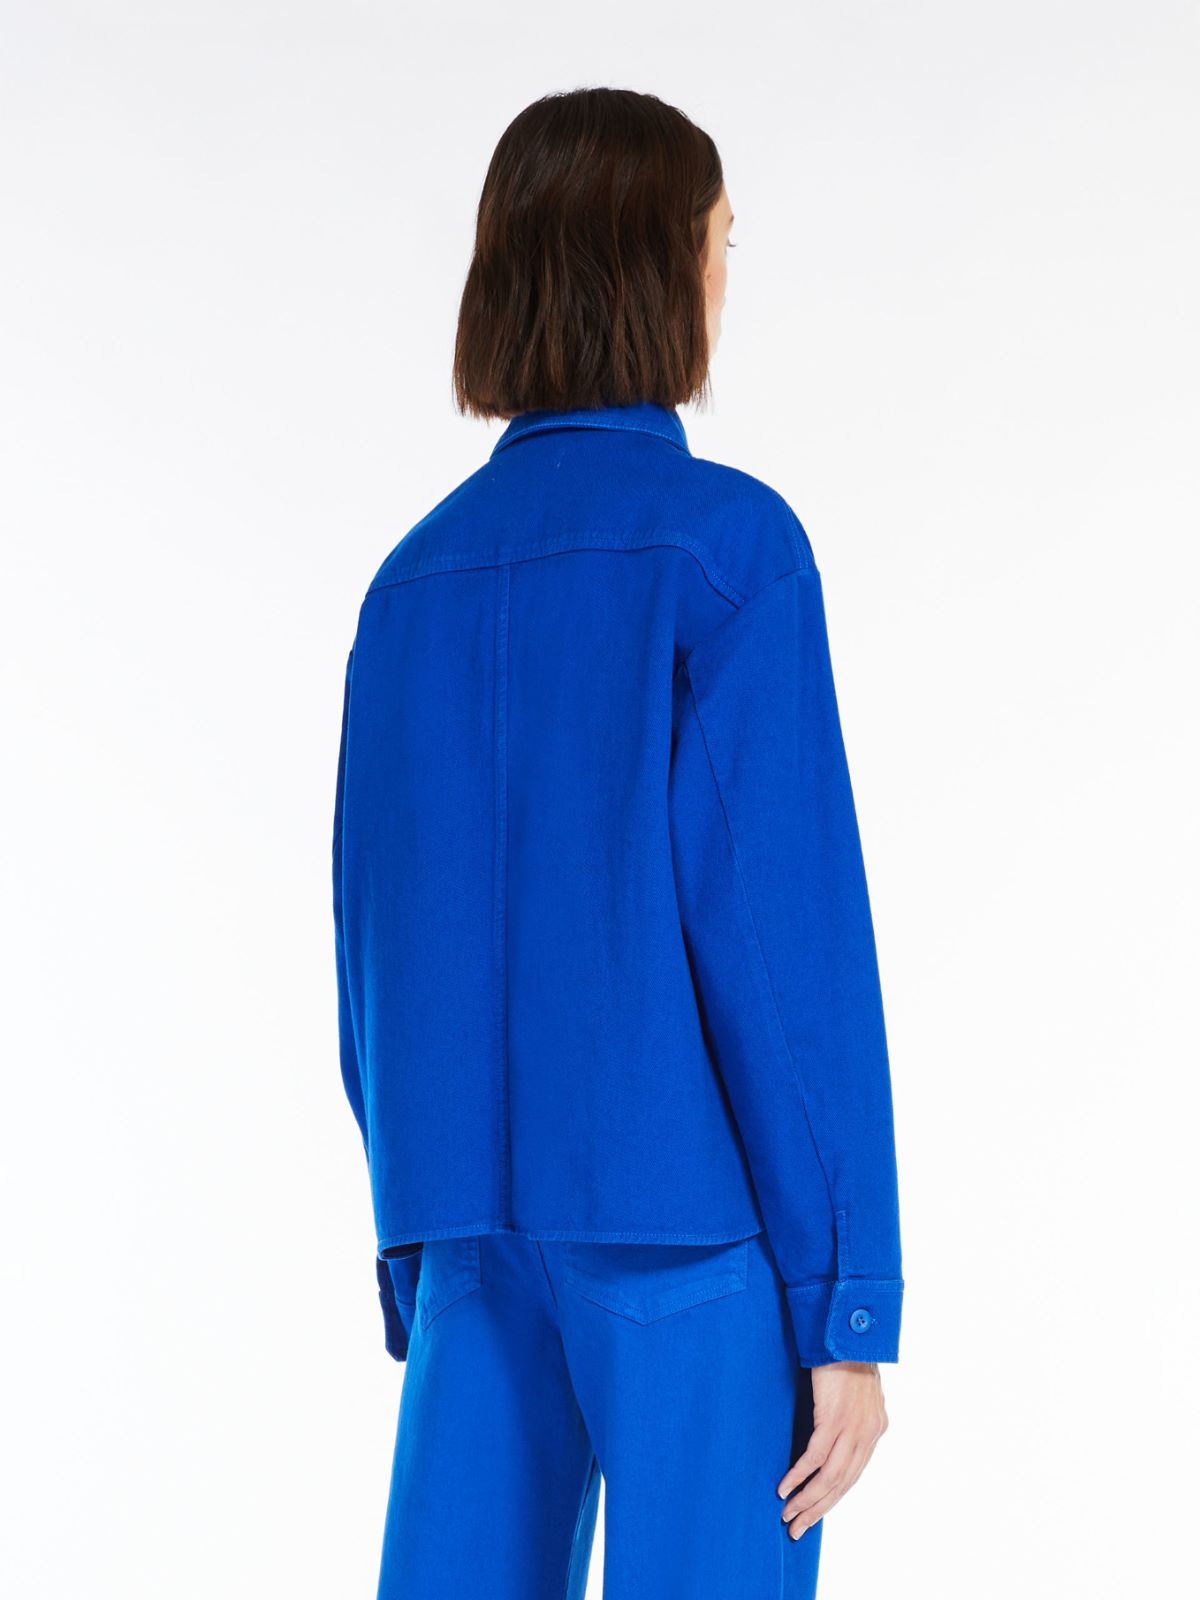 Cotton jacket - CORNFLOWER BLUE - Weekend Max Mara - 3